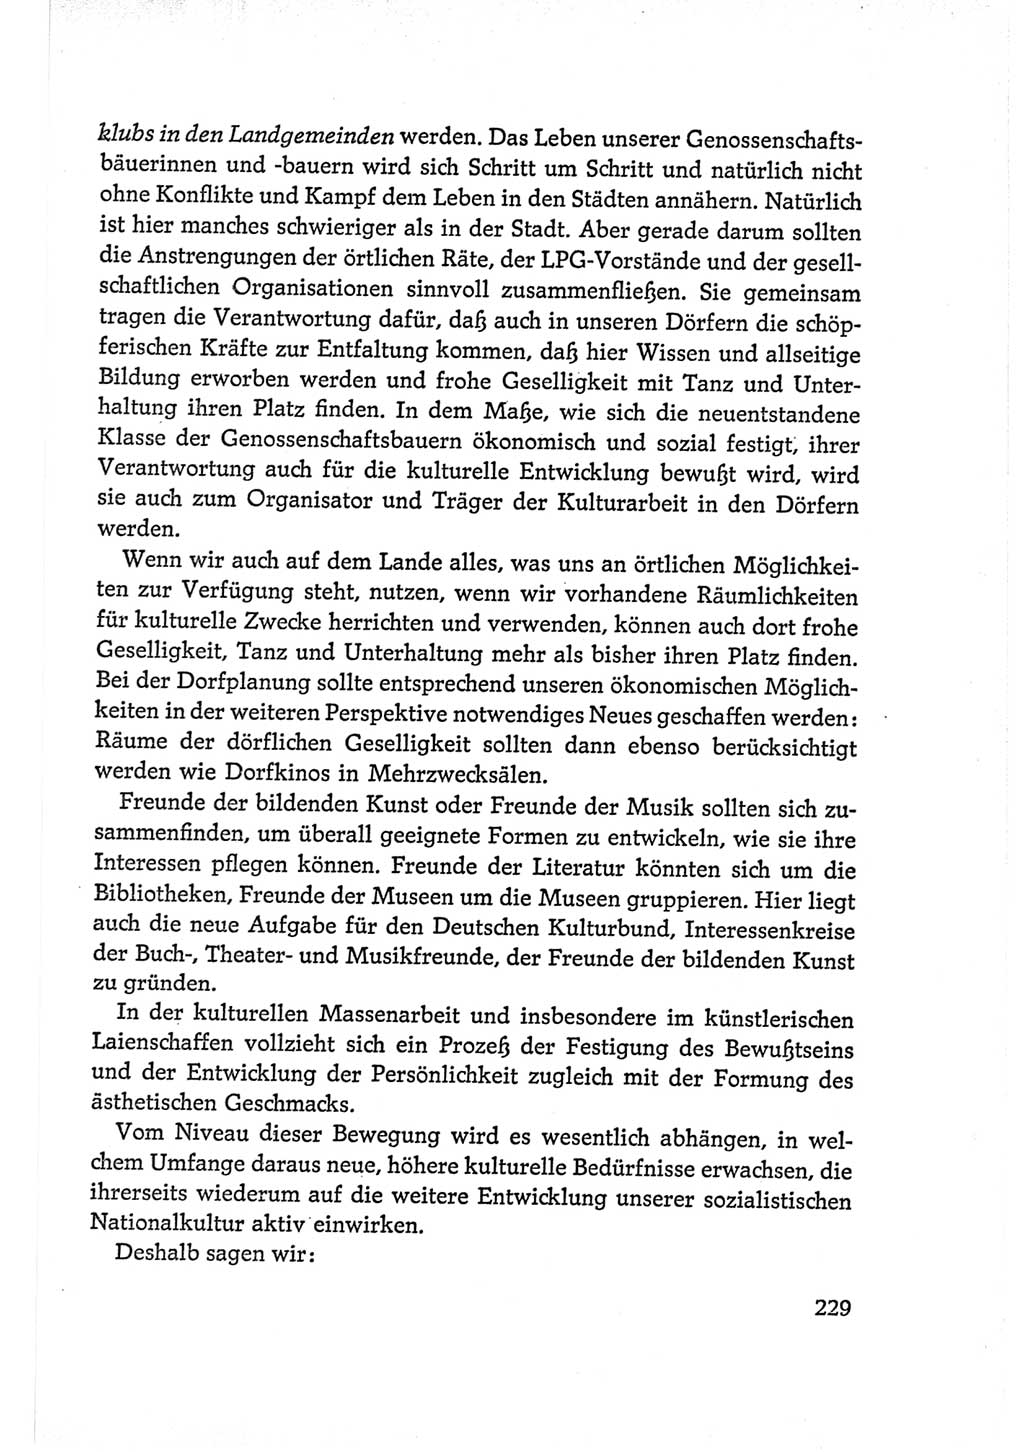 Protokoll der Verhandlungen des Ⅵ. Parteitages der Sozialistischen Einheitspartei Deutschlands (SED) [Deutsche Demokratische Republik (DDR)] 1963, Band Ⅰ, Seite 229 (Prot. Verh. Ⅵ. PT SED DDR 1963, Bd. Ⅰ, S. 229)